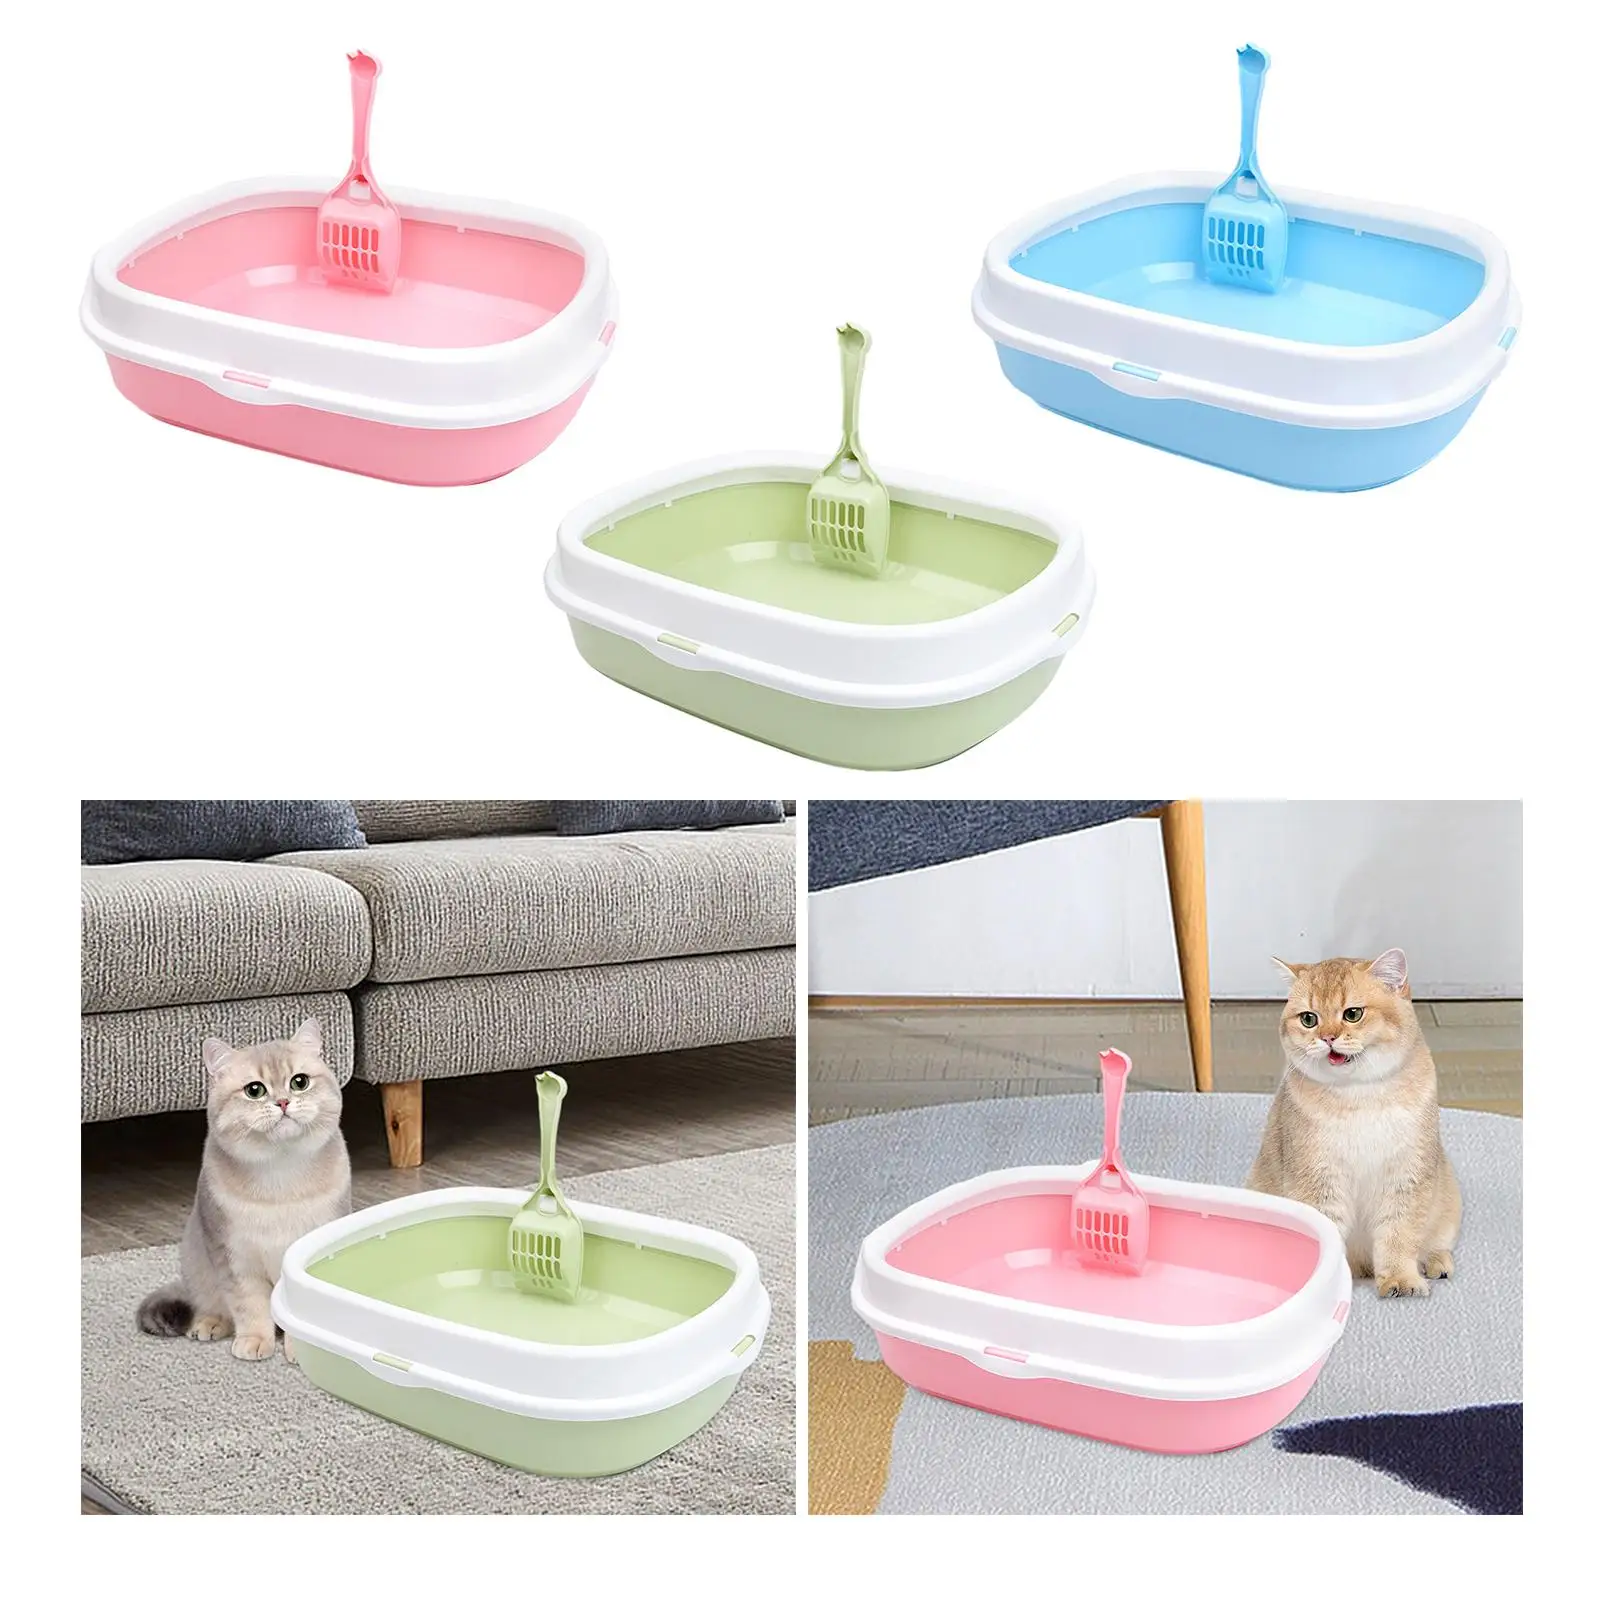 Cat Litter Box for Indoor Cats Reusable Sturdy Splashproof Easy to Clean with Scoop Heighten Kitten Potty Toilet Cat Bedpan